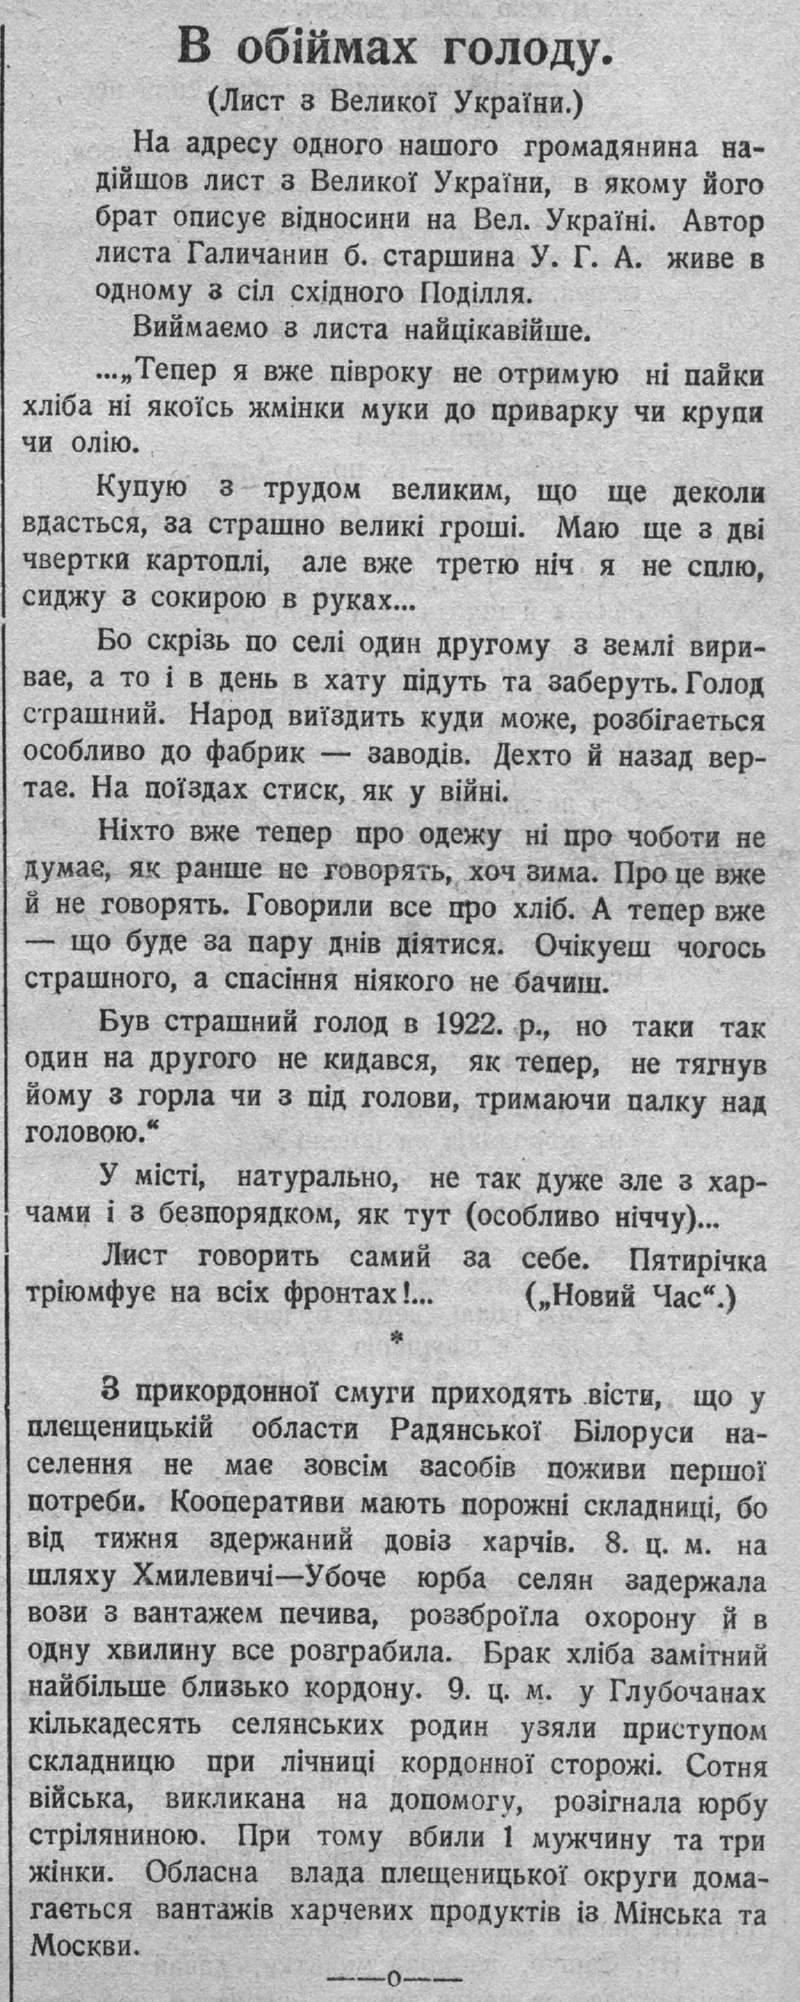 В обіймах голоду (Лист з Великої України) 22 березня 1932 р. газ. Час № 1020, с. 1